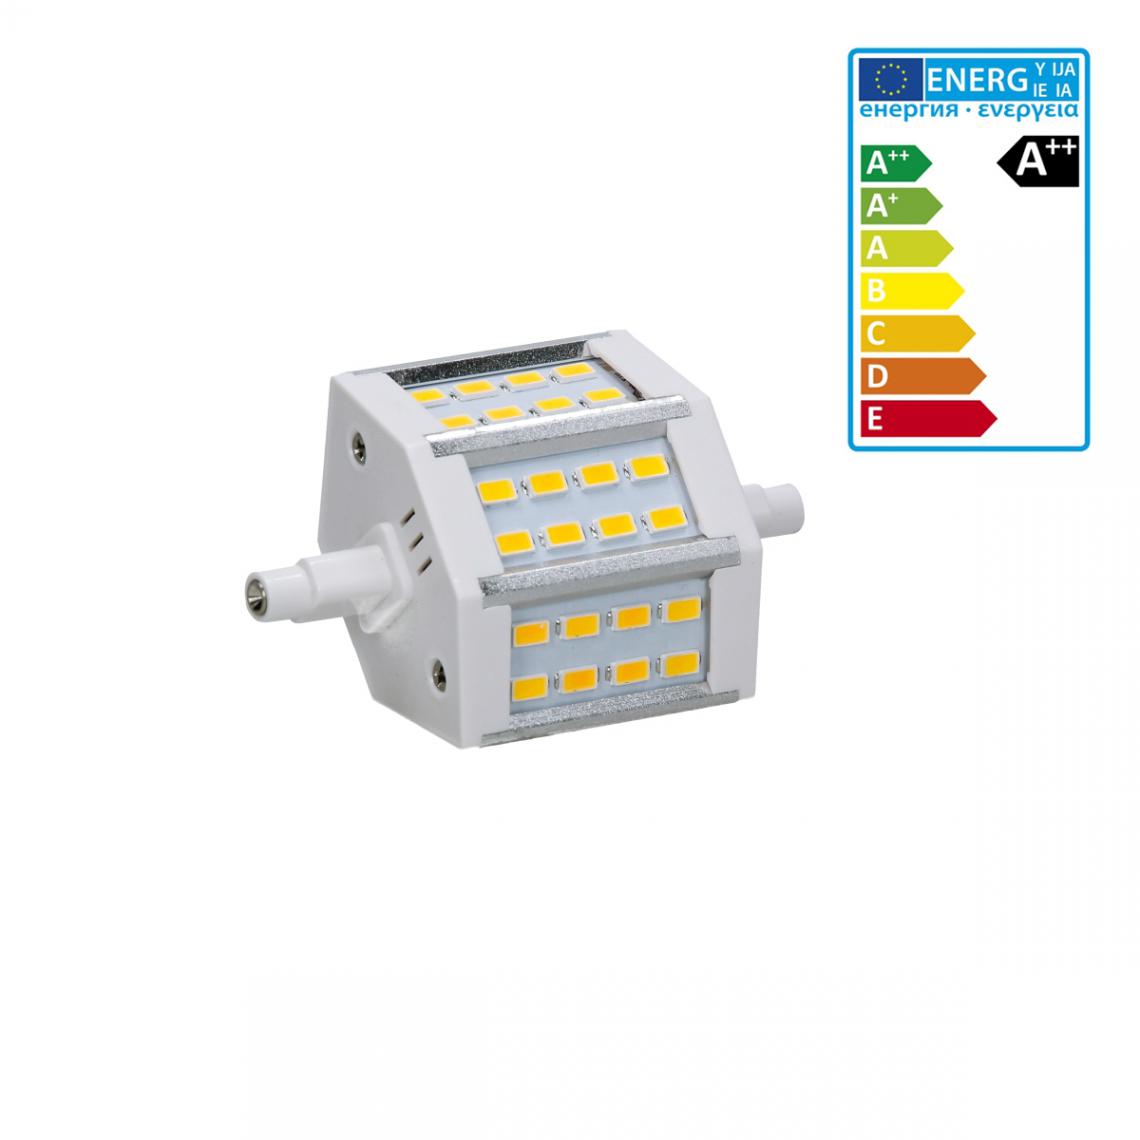 Ecd Germany - ECD Germany R7S Lampe LED 5W 78mm 360 lumens SMD 360 5730 AC 220-240 angle de faisceau 180 ° remplace pas réglable ampoule halogène 35W blanc froid - Tubes et néons